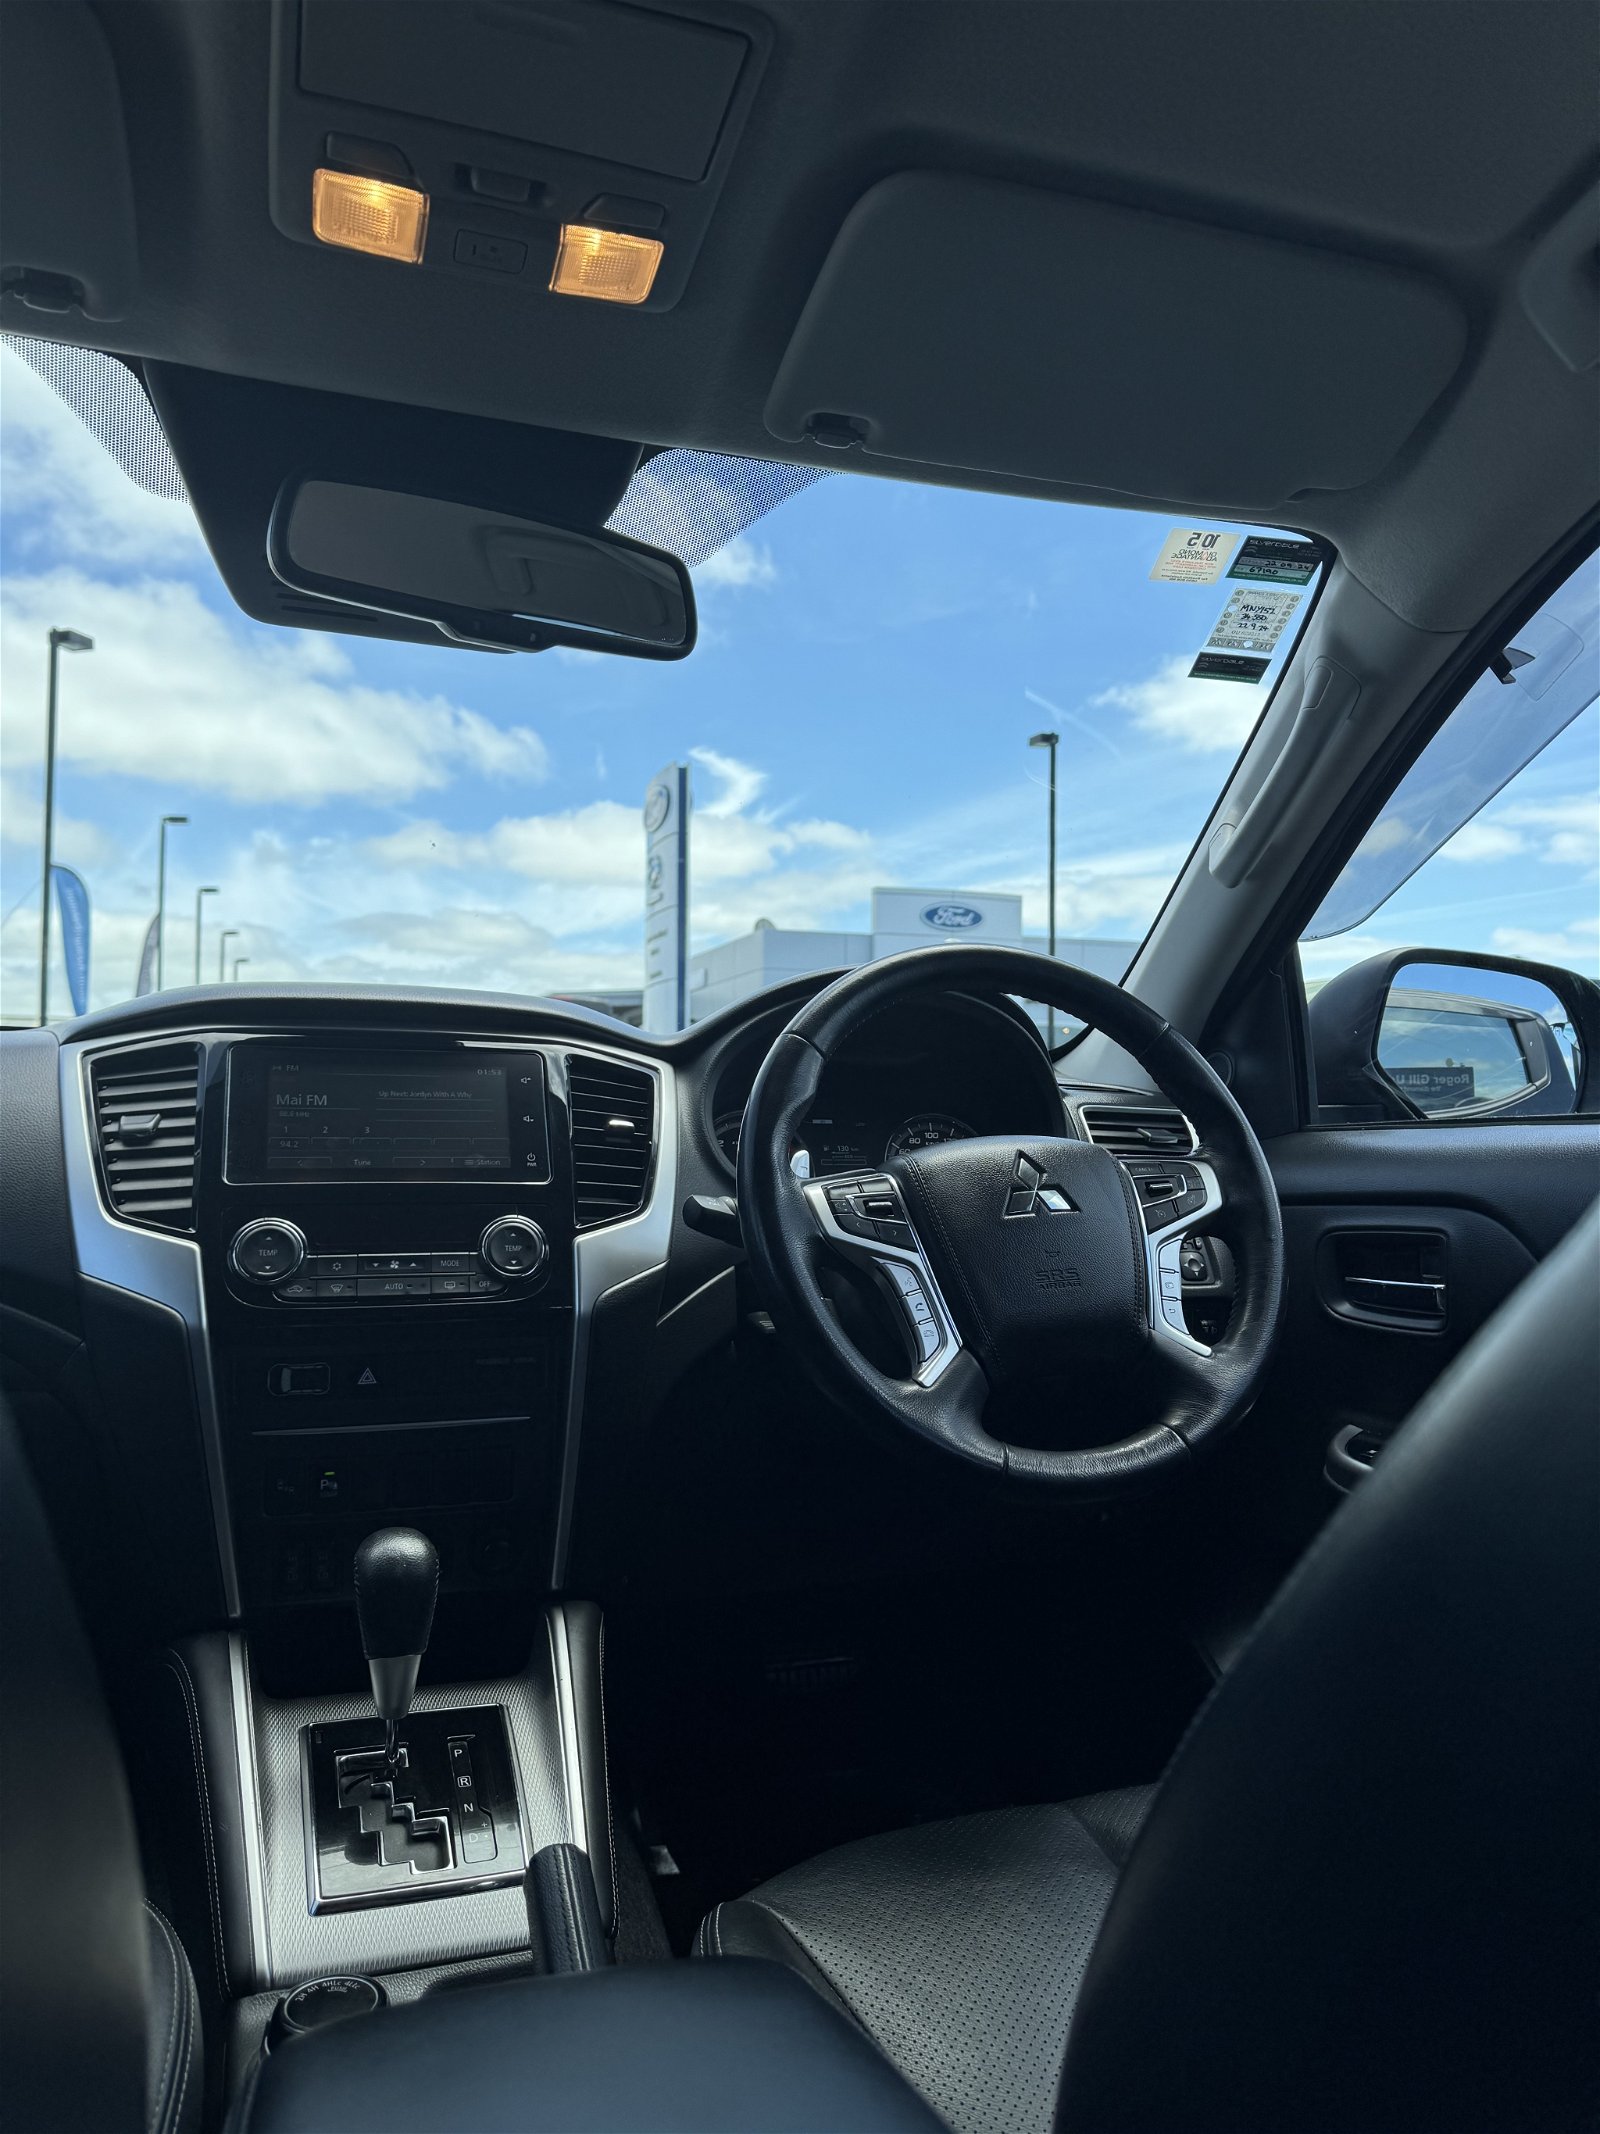 2019 Mitsubishi Triton VRX 4WD